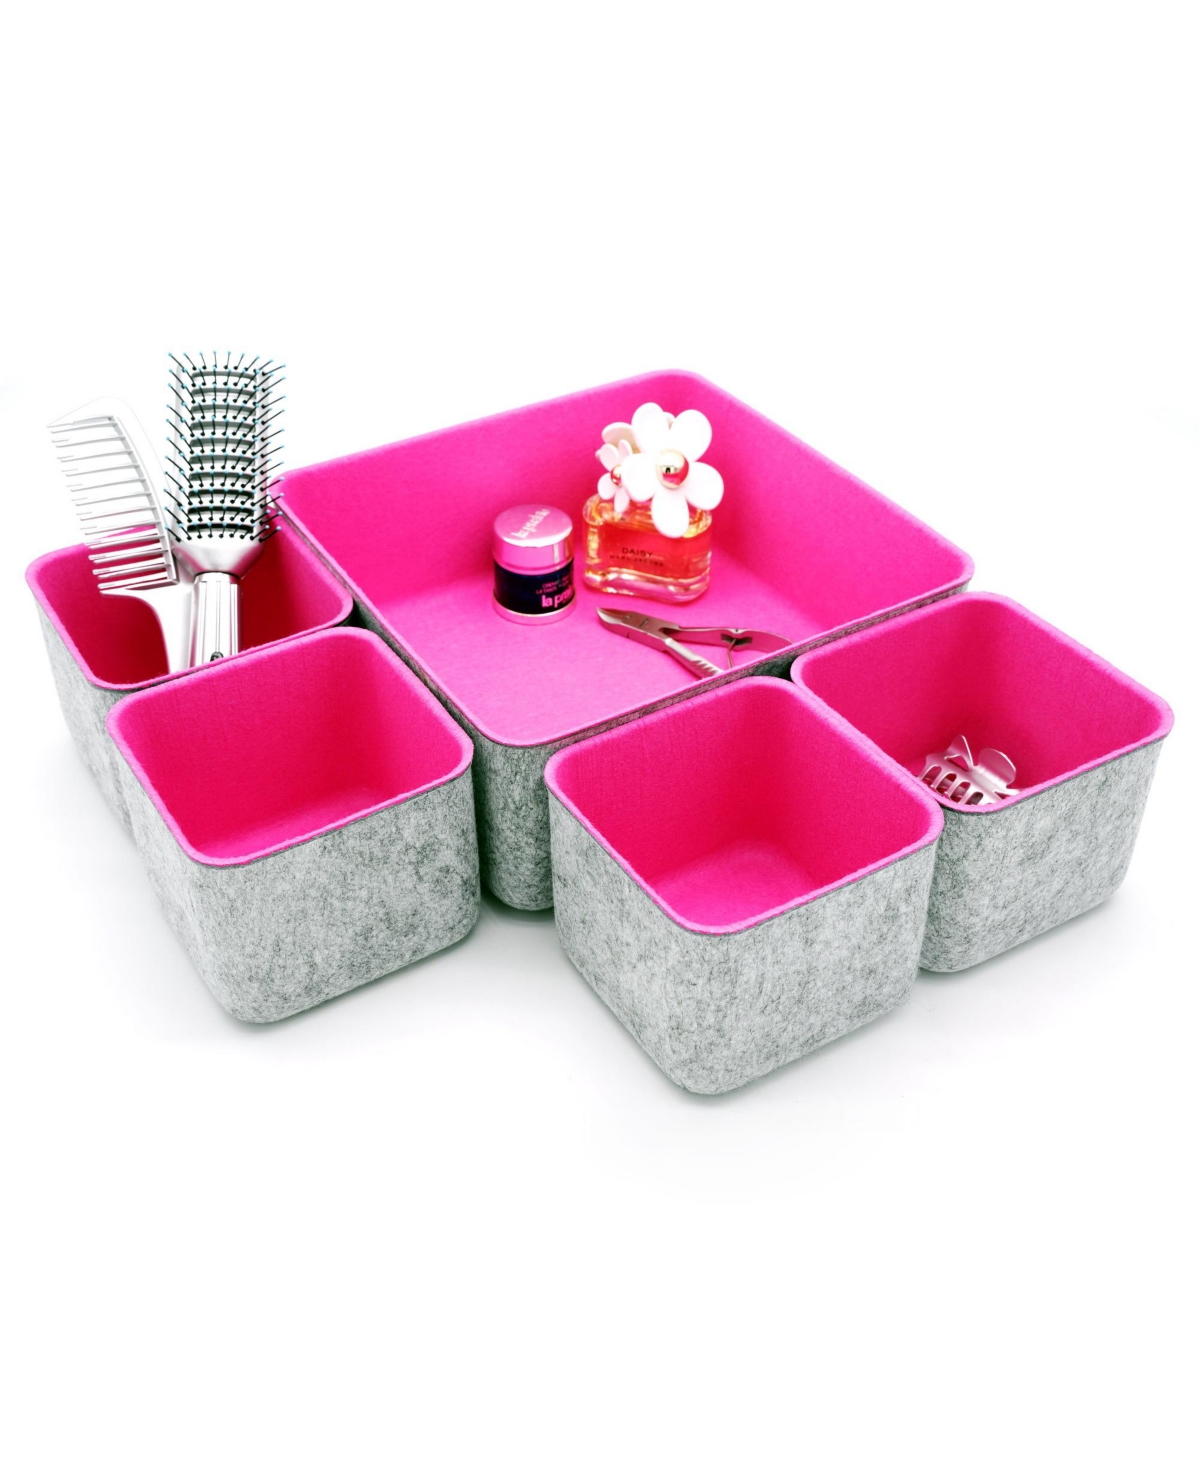 Shop Welaxy 5 Piece Square Felt Storage Bin Set In Hot Pink